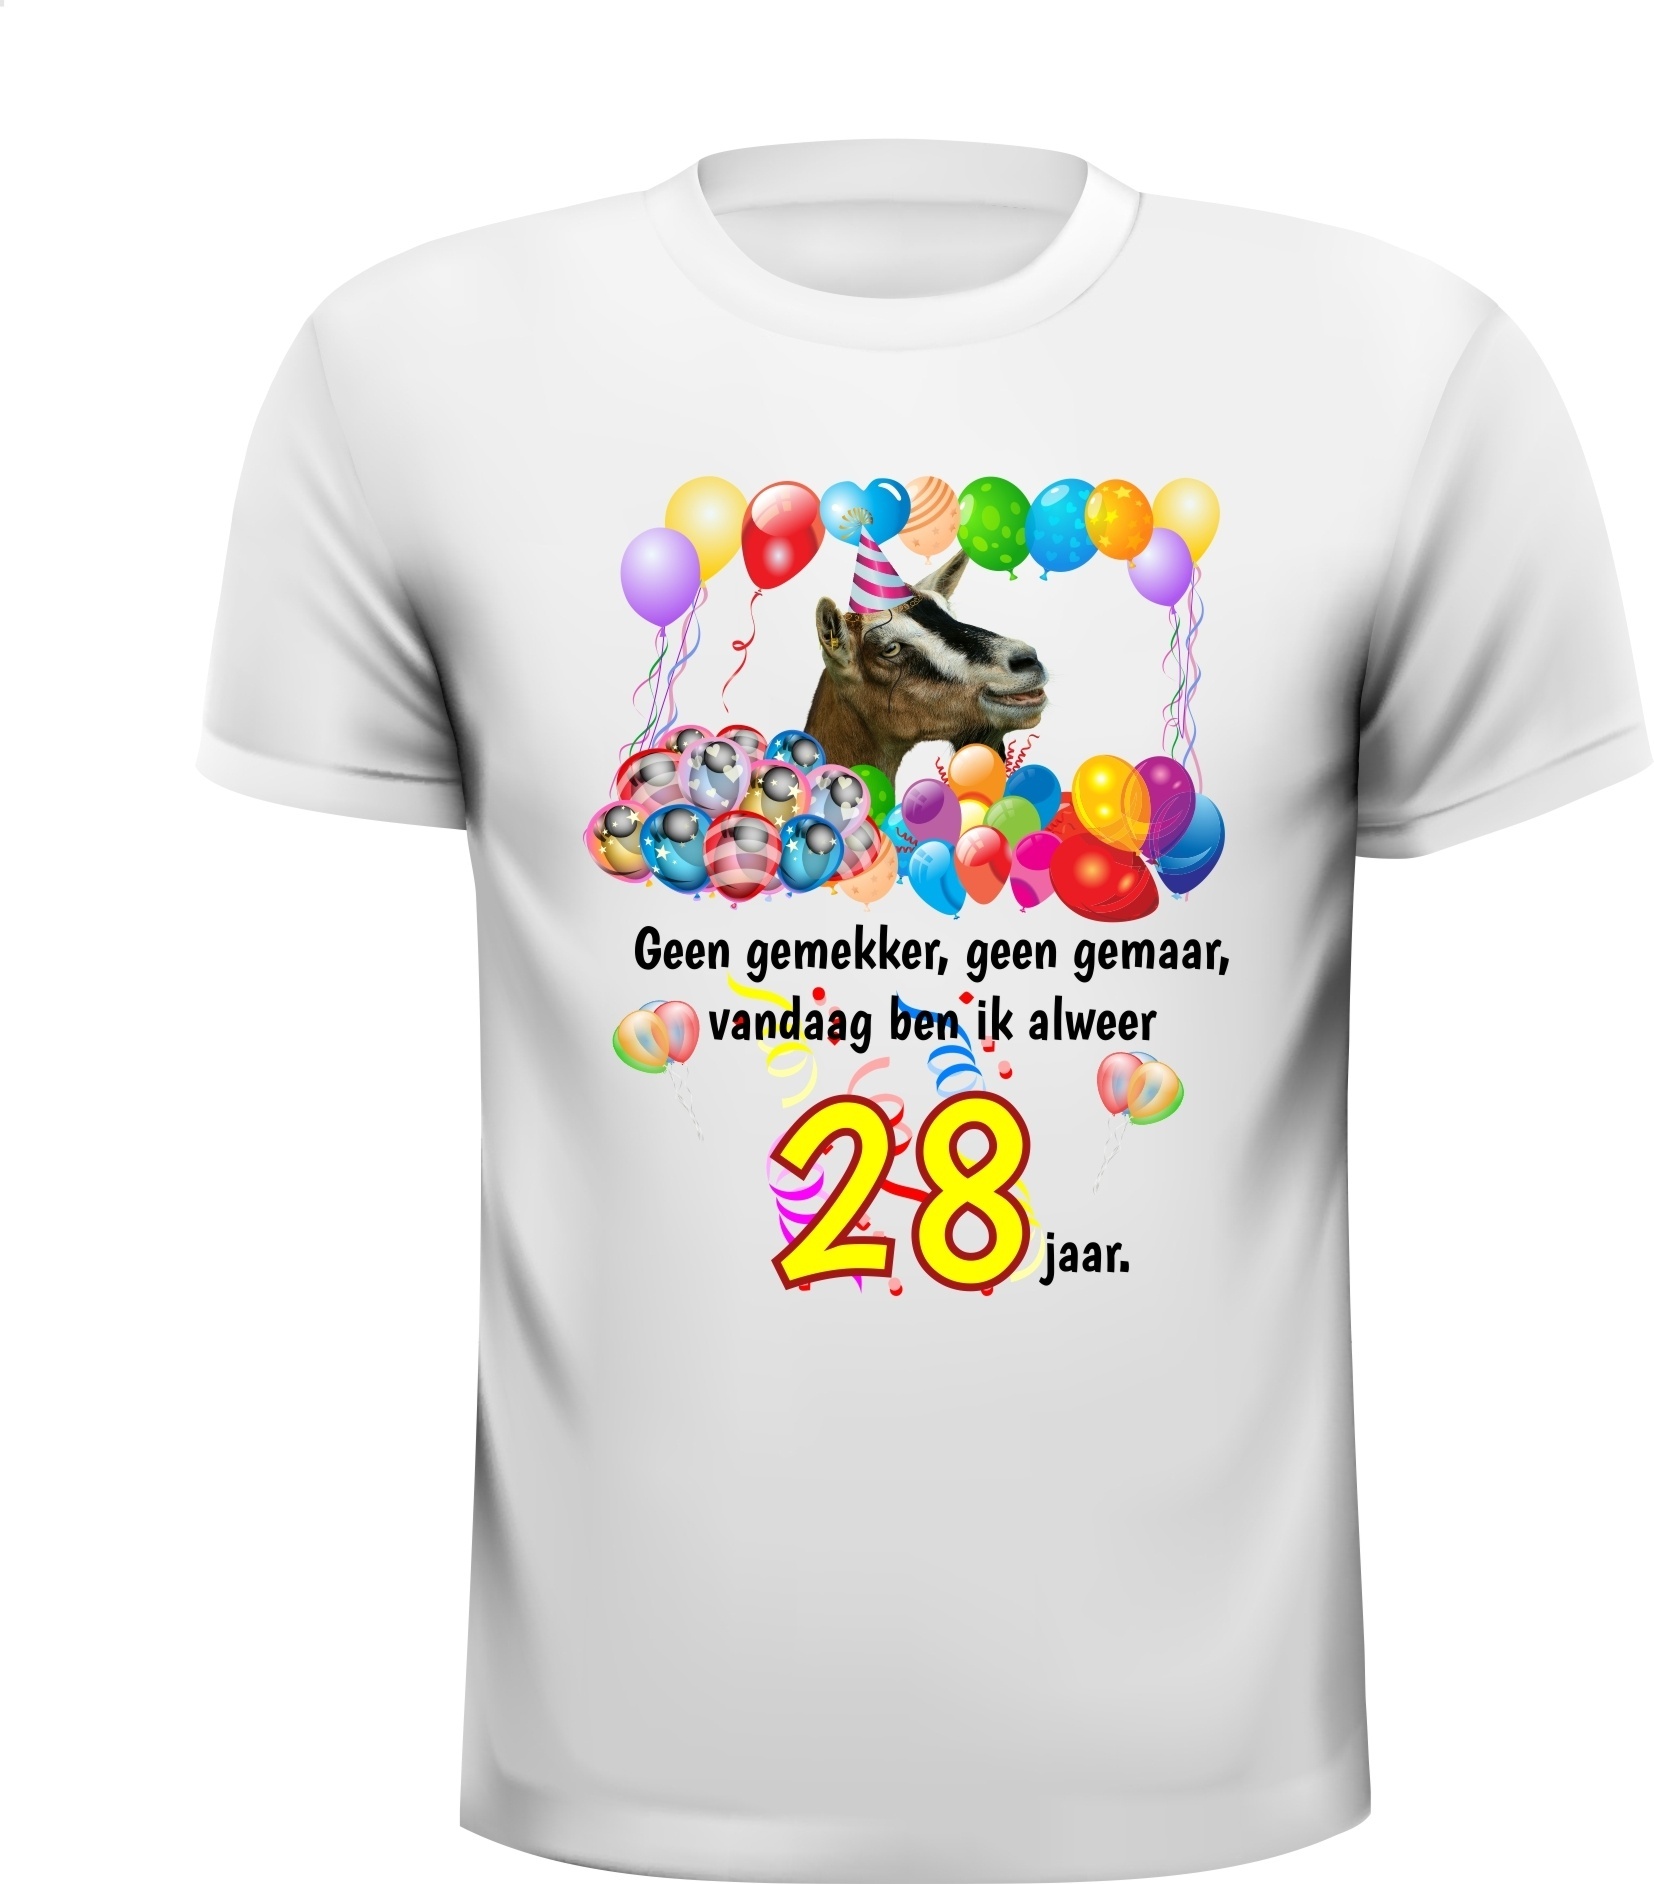 Mooi geprint verjaardag shirt voor een verjaardag van 28 jaar